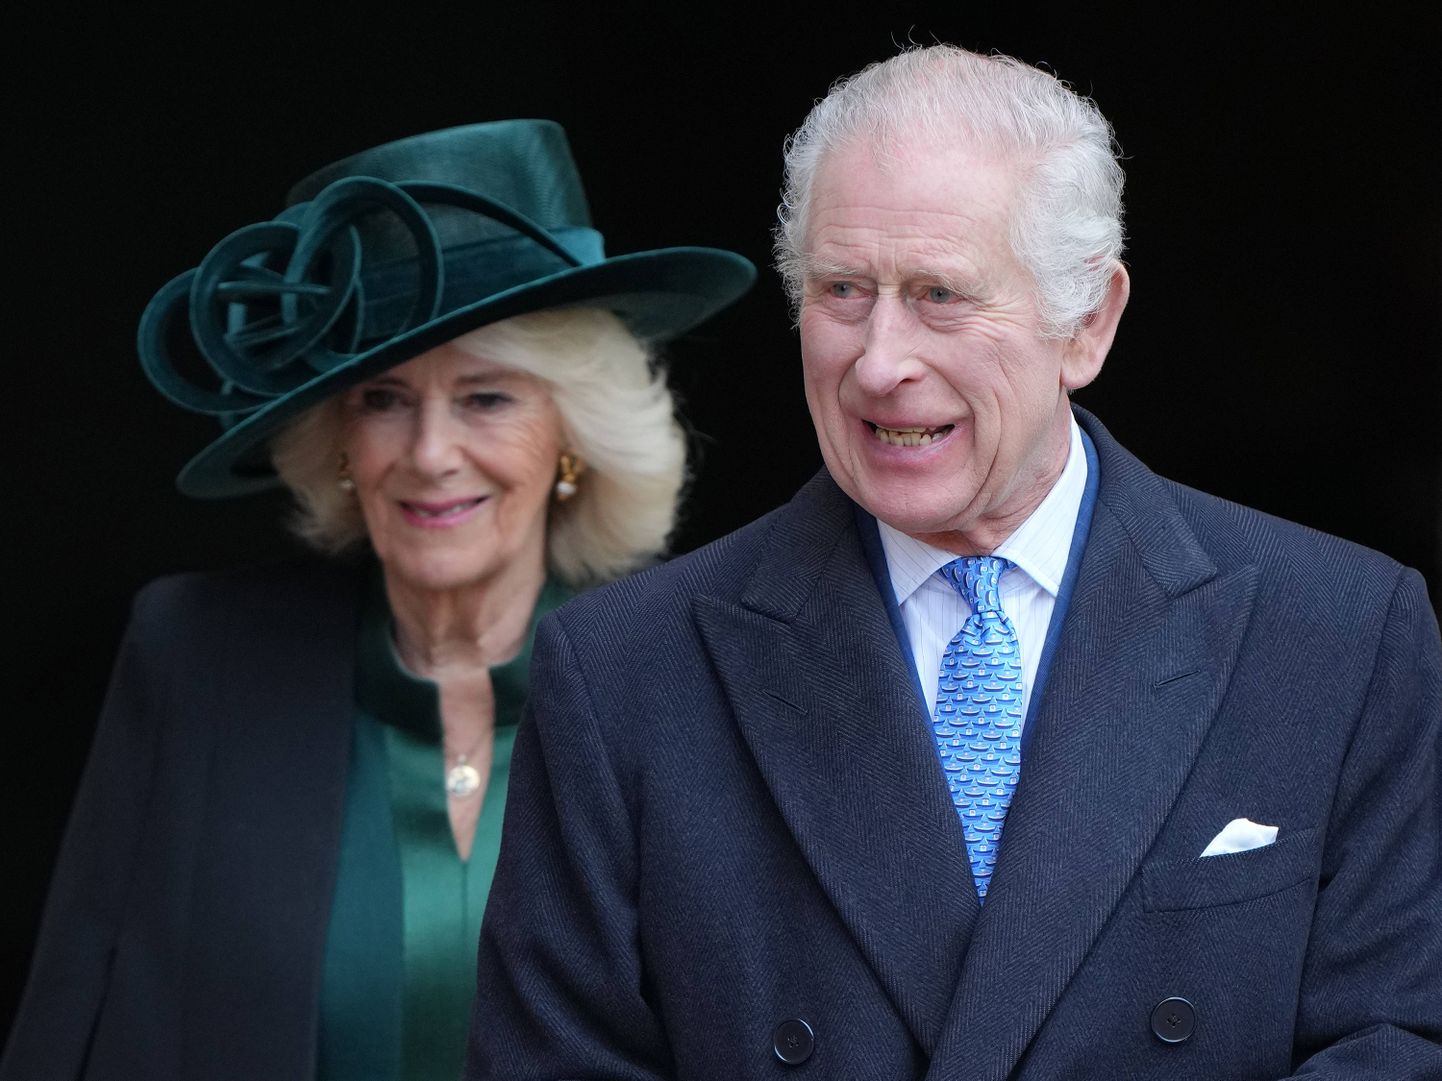 Ühendkuningriigi kuninganna Camilla ja kuningas Charles III. Camilla osaleb vapralt nii tööülesannete täitmisel, kui hoolitseb oma abikaasa heaolu eest.